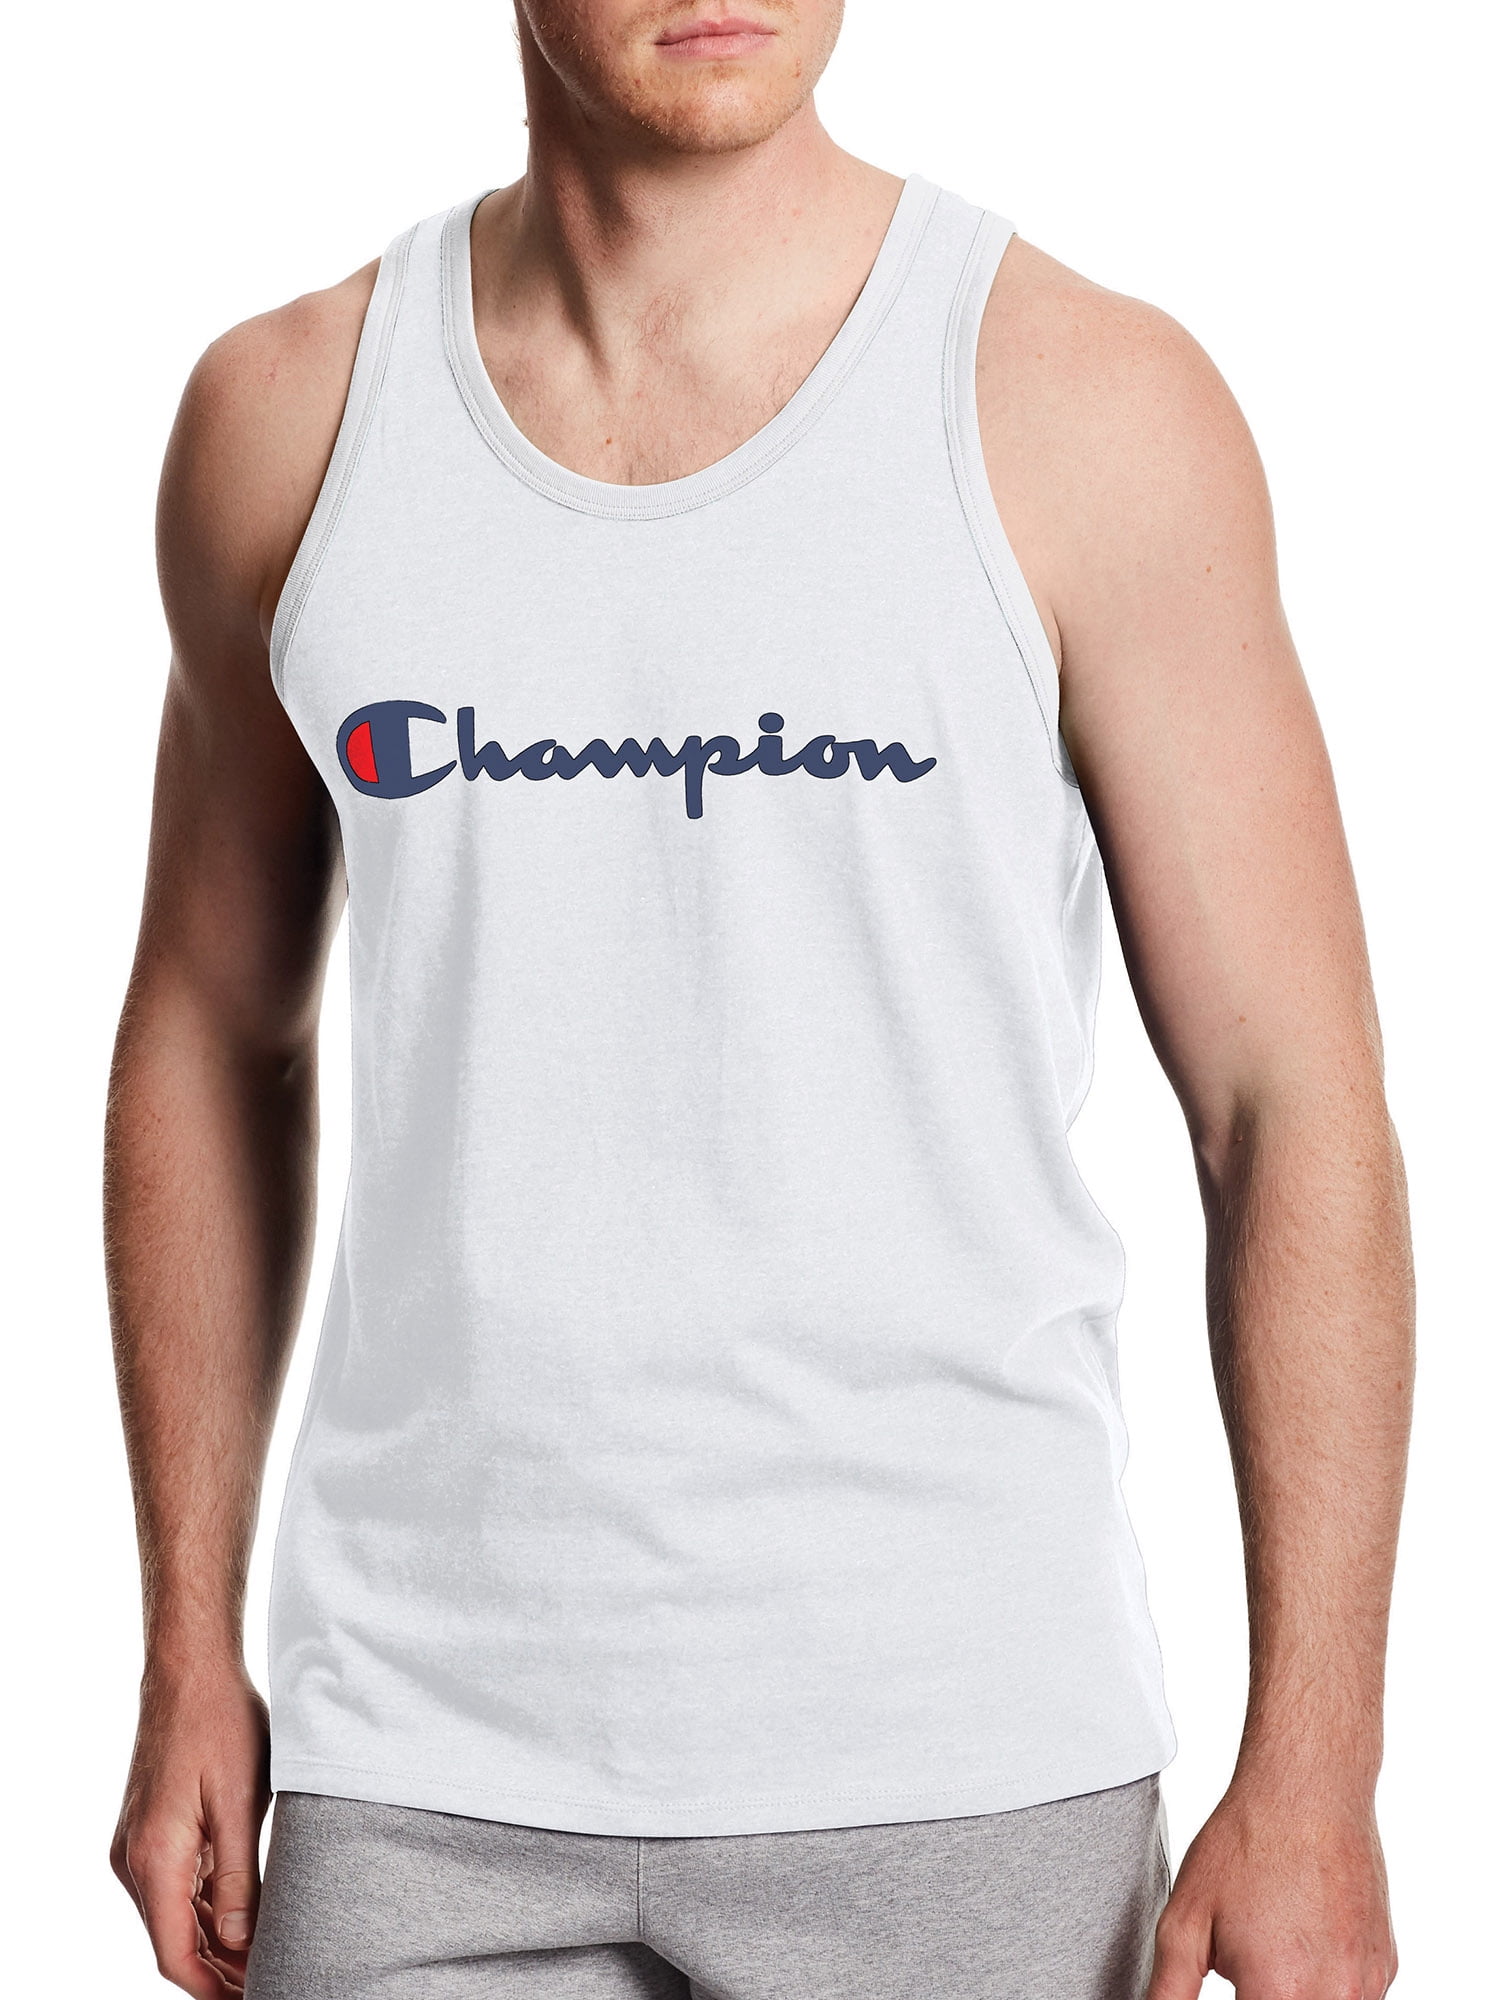 champion t shirt sleeveless jersey